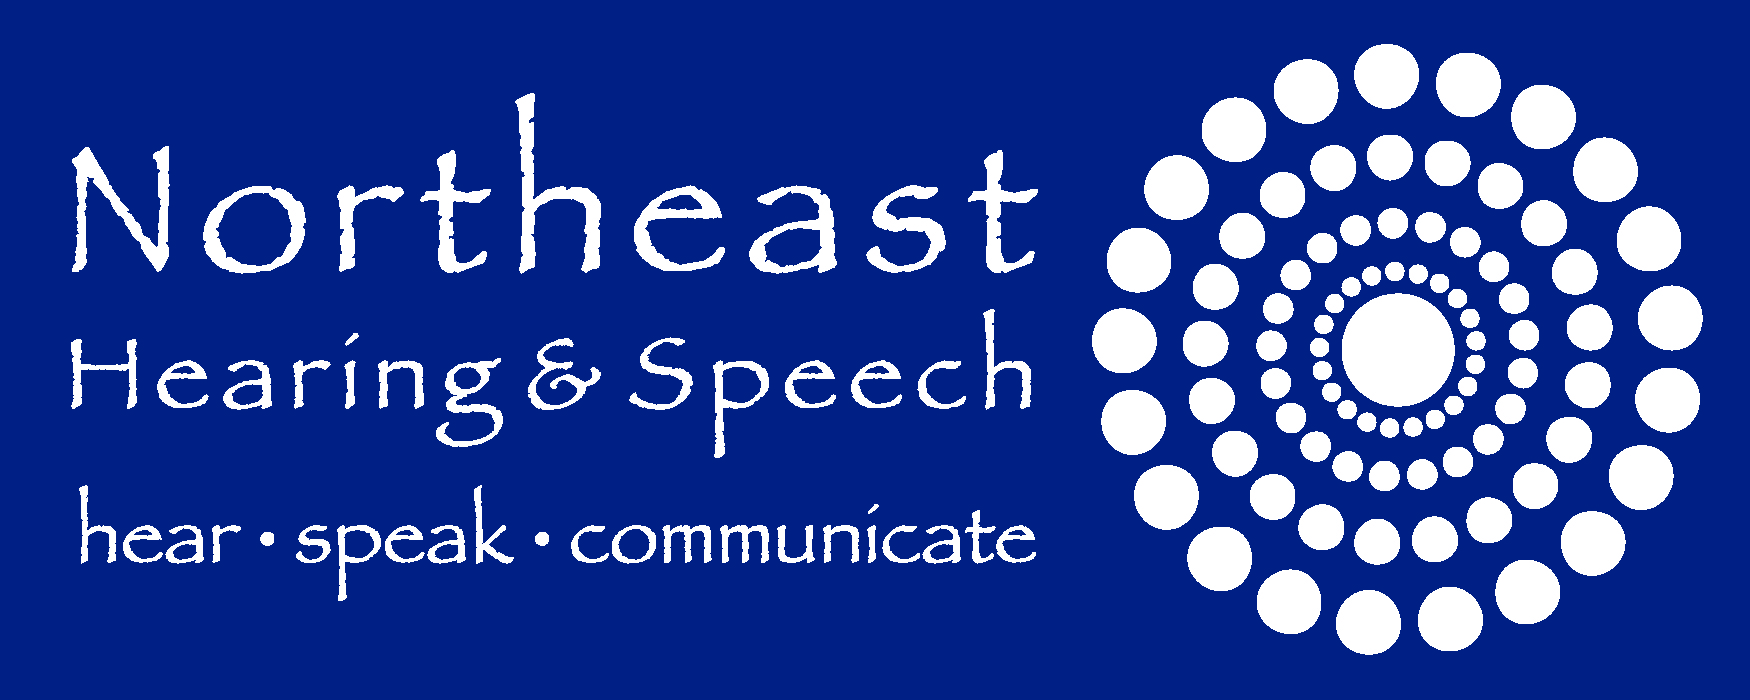 Northeast Hearing & Speech